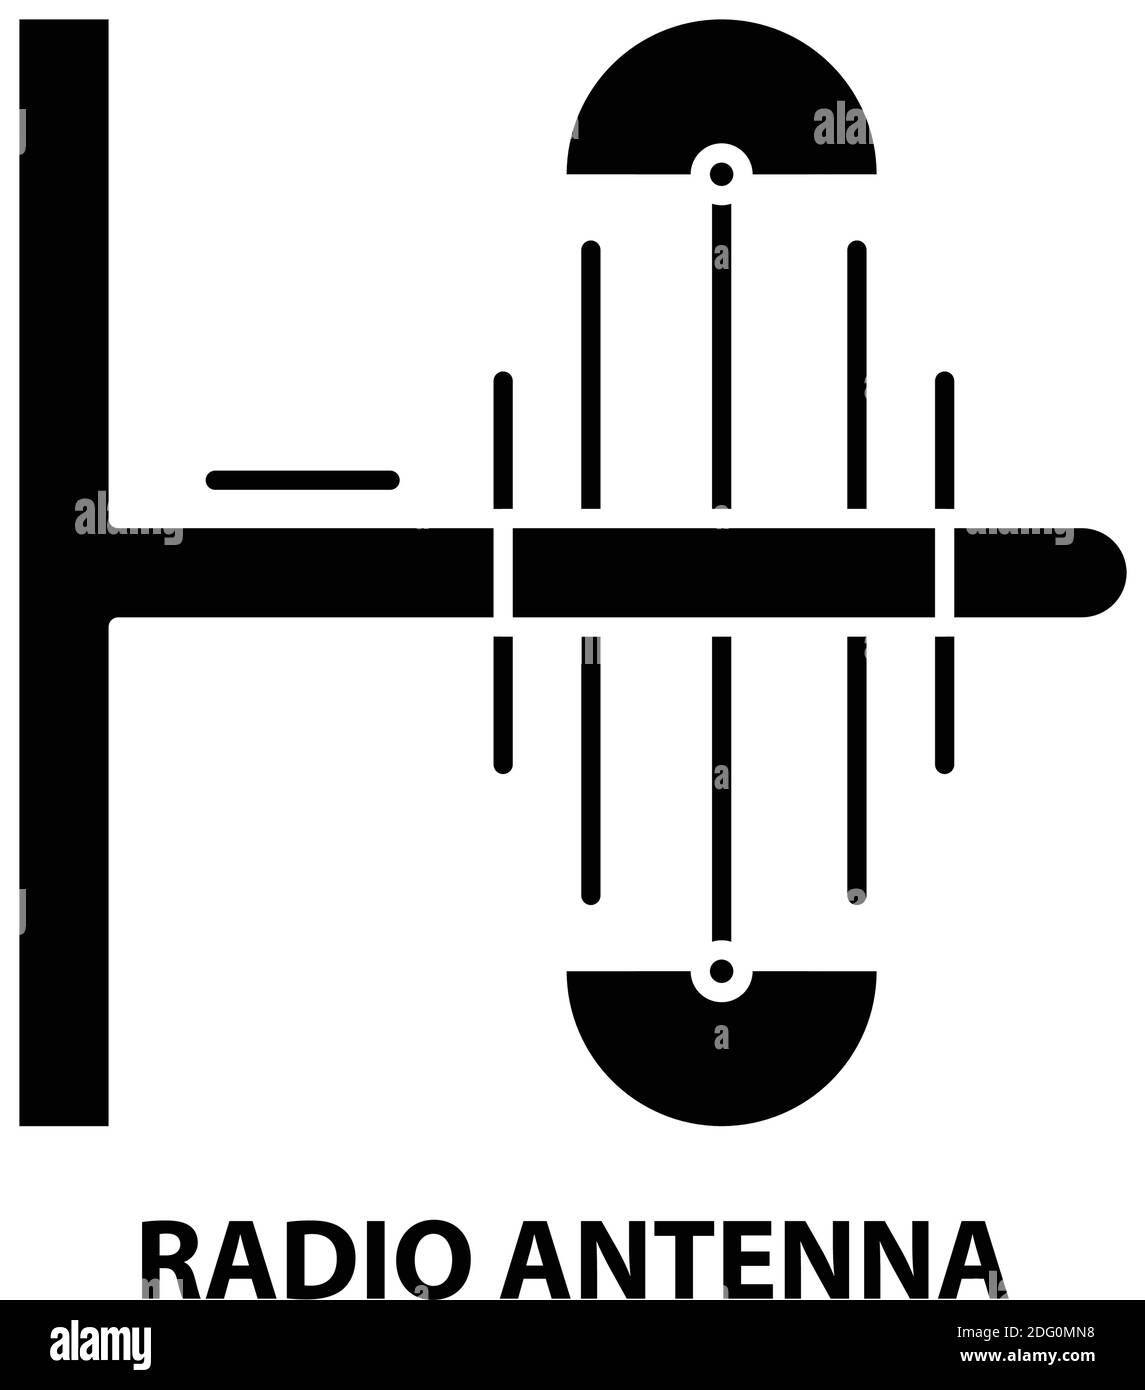 Antennensymbol des Funkgeräts, schwarzes Vektorzeichen mit editierbaren Strichen, Konzeptdarstellung Stock Vektor